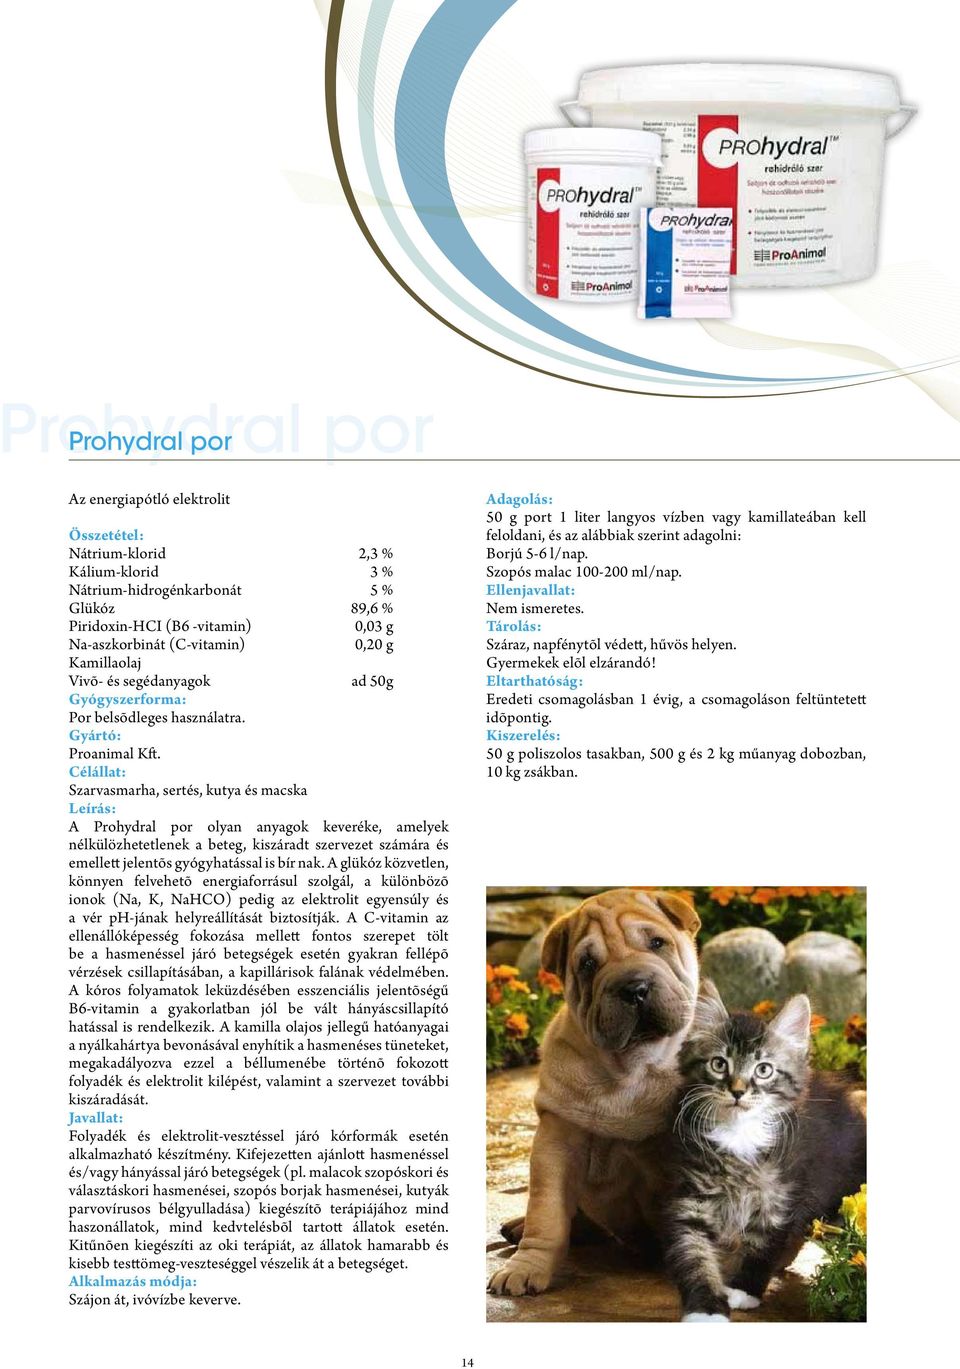 Vény nélkül kapható állatgyógyászati készítményeink - PDF Ingyenes letöltés